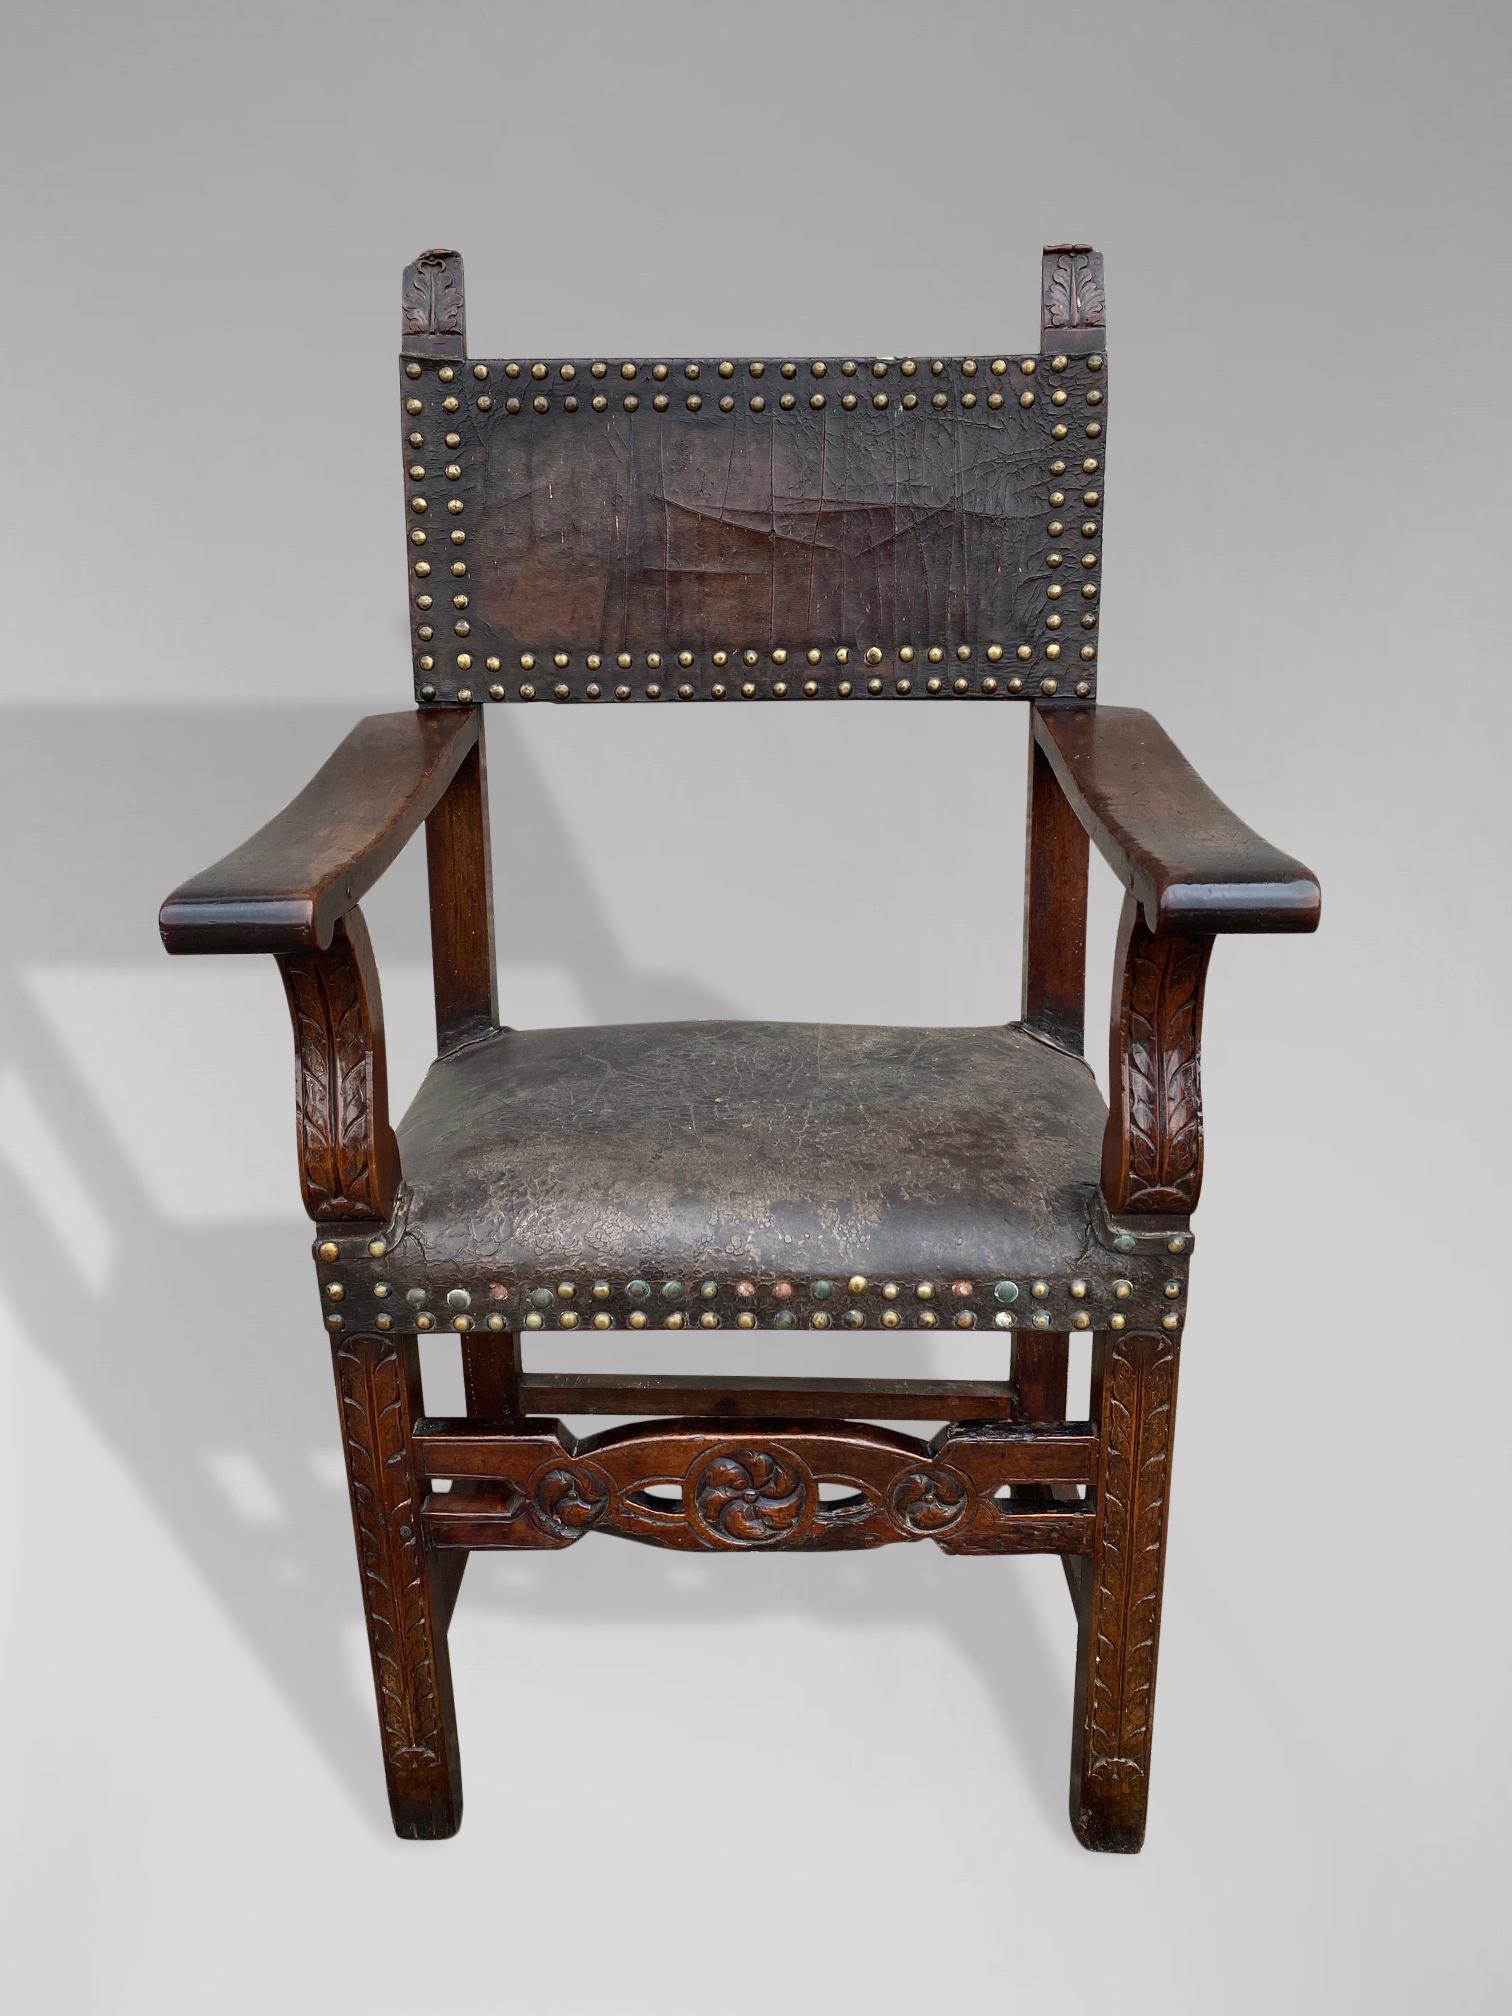 Un beau fauteuil espagnol de la fin du 17ème siècle en noyer et cuir, conservant son siège et son dossier en cuir d'origine, maintenu par des clous en laiton doré usés. Le dossier de la chaise est orné de deux fleurons d'acanthe finement sculptés,